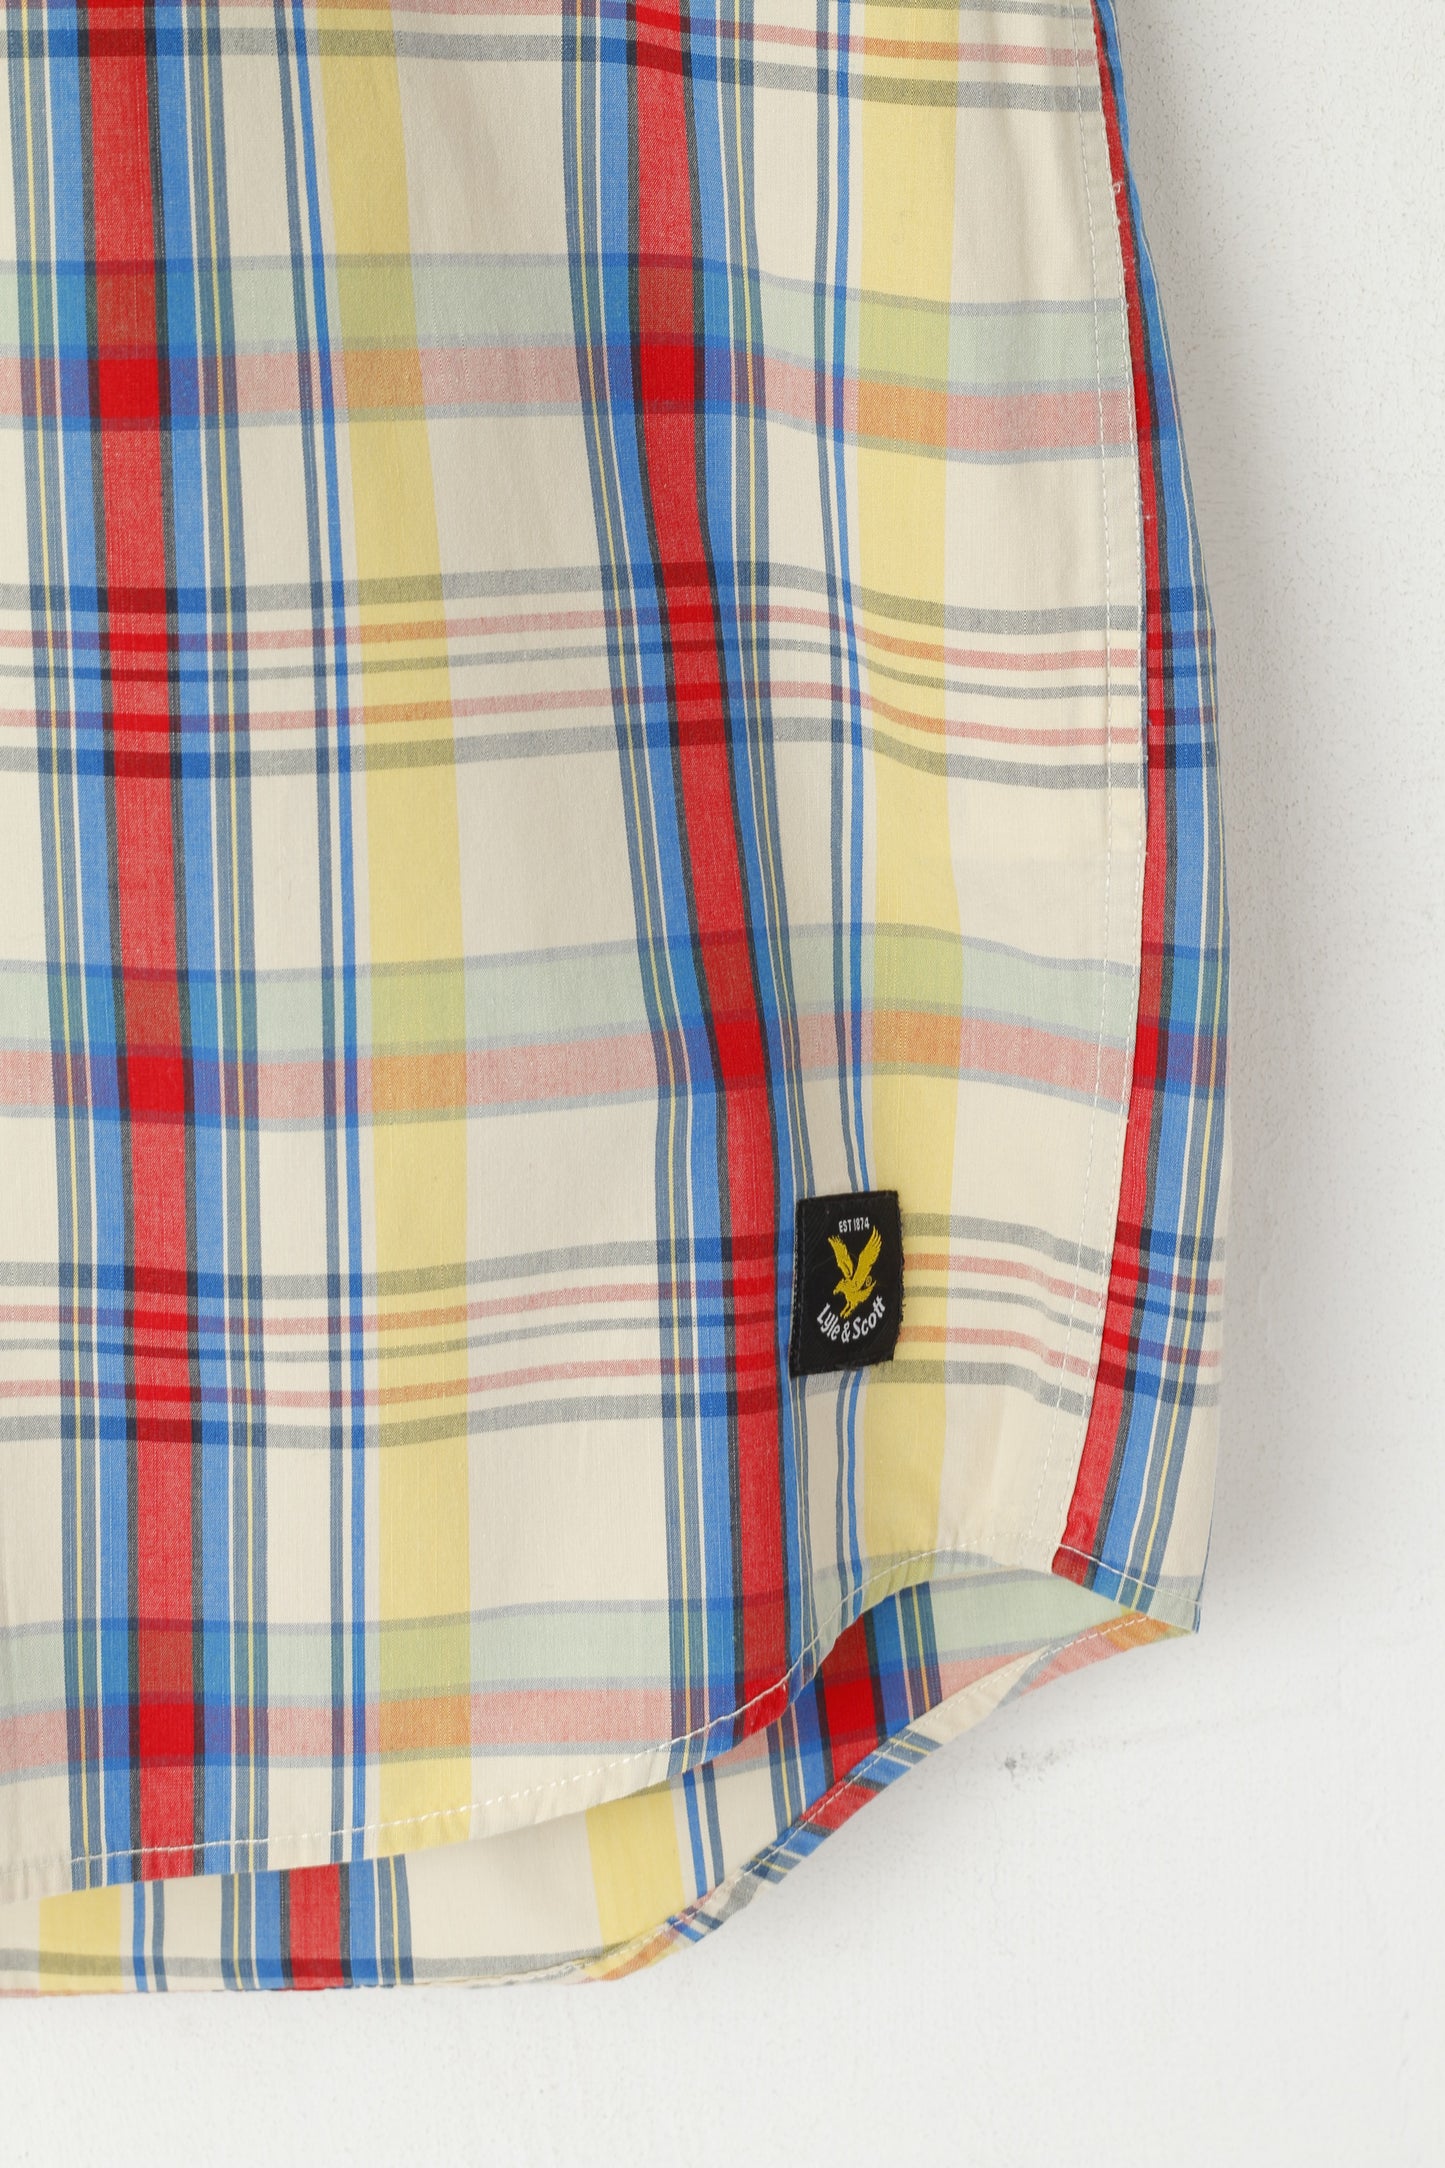 Lyle & Scott Men L Casual Shirt Multicolour Check Button Down Collar Regular Fit Top